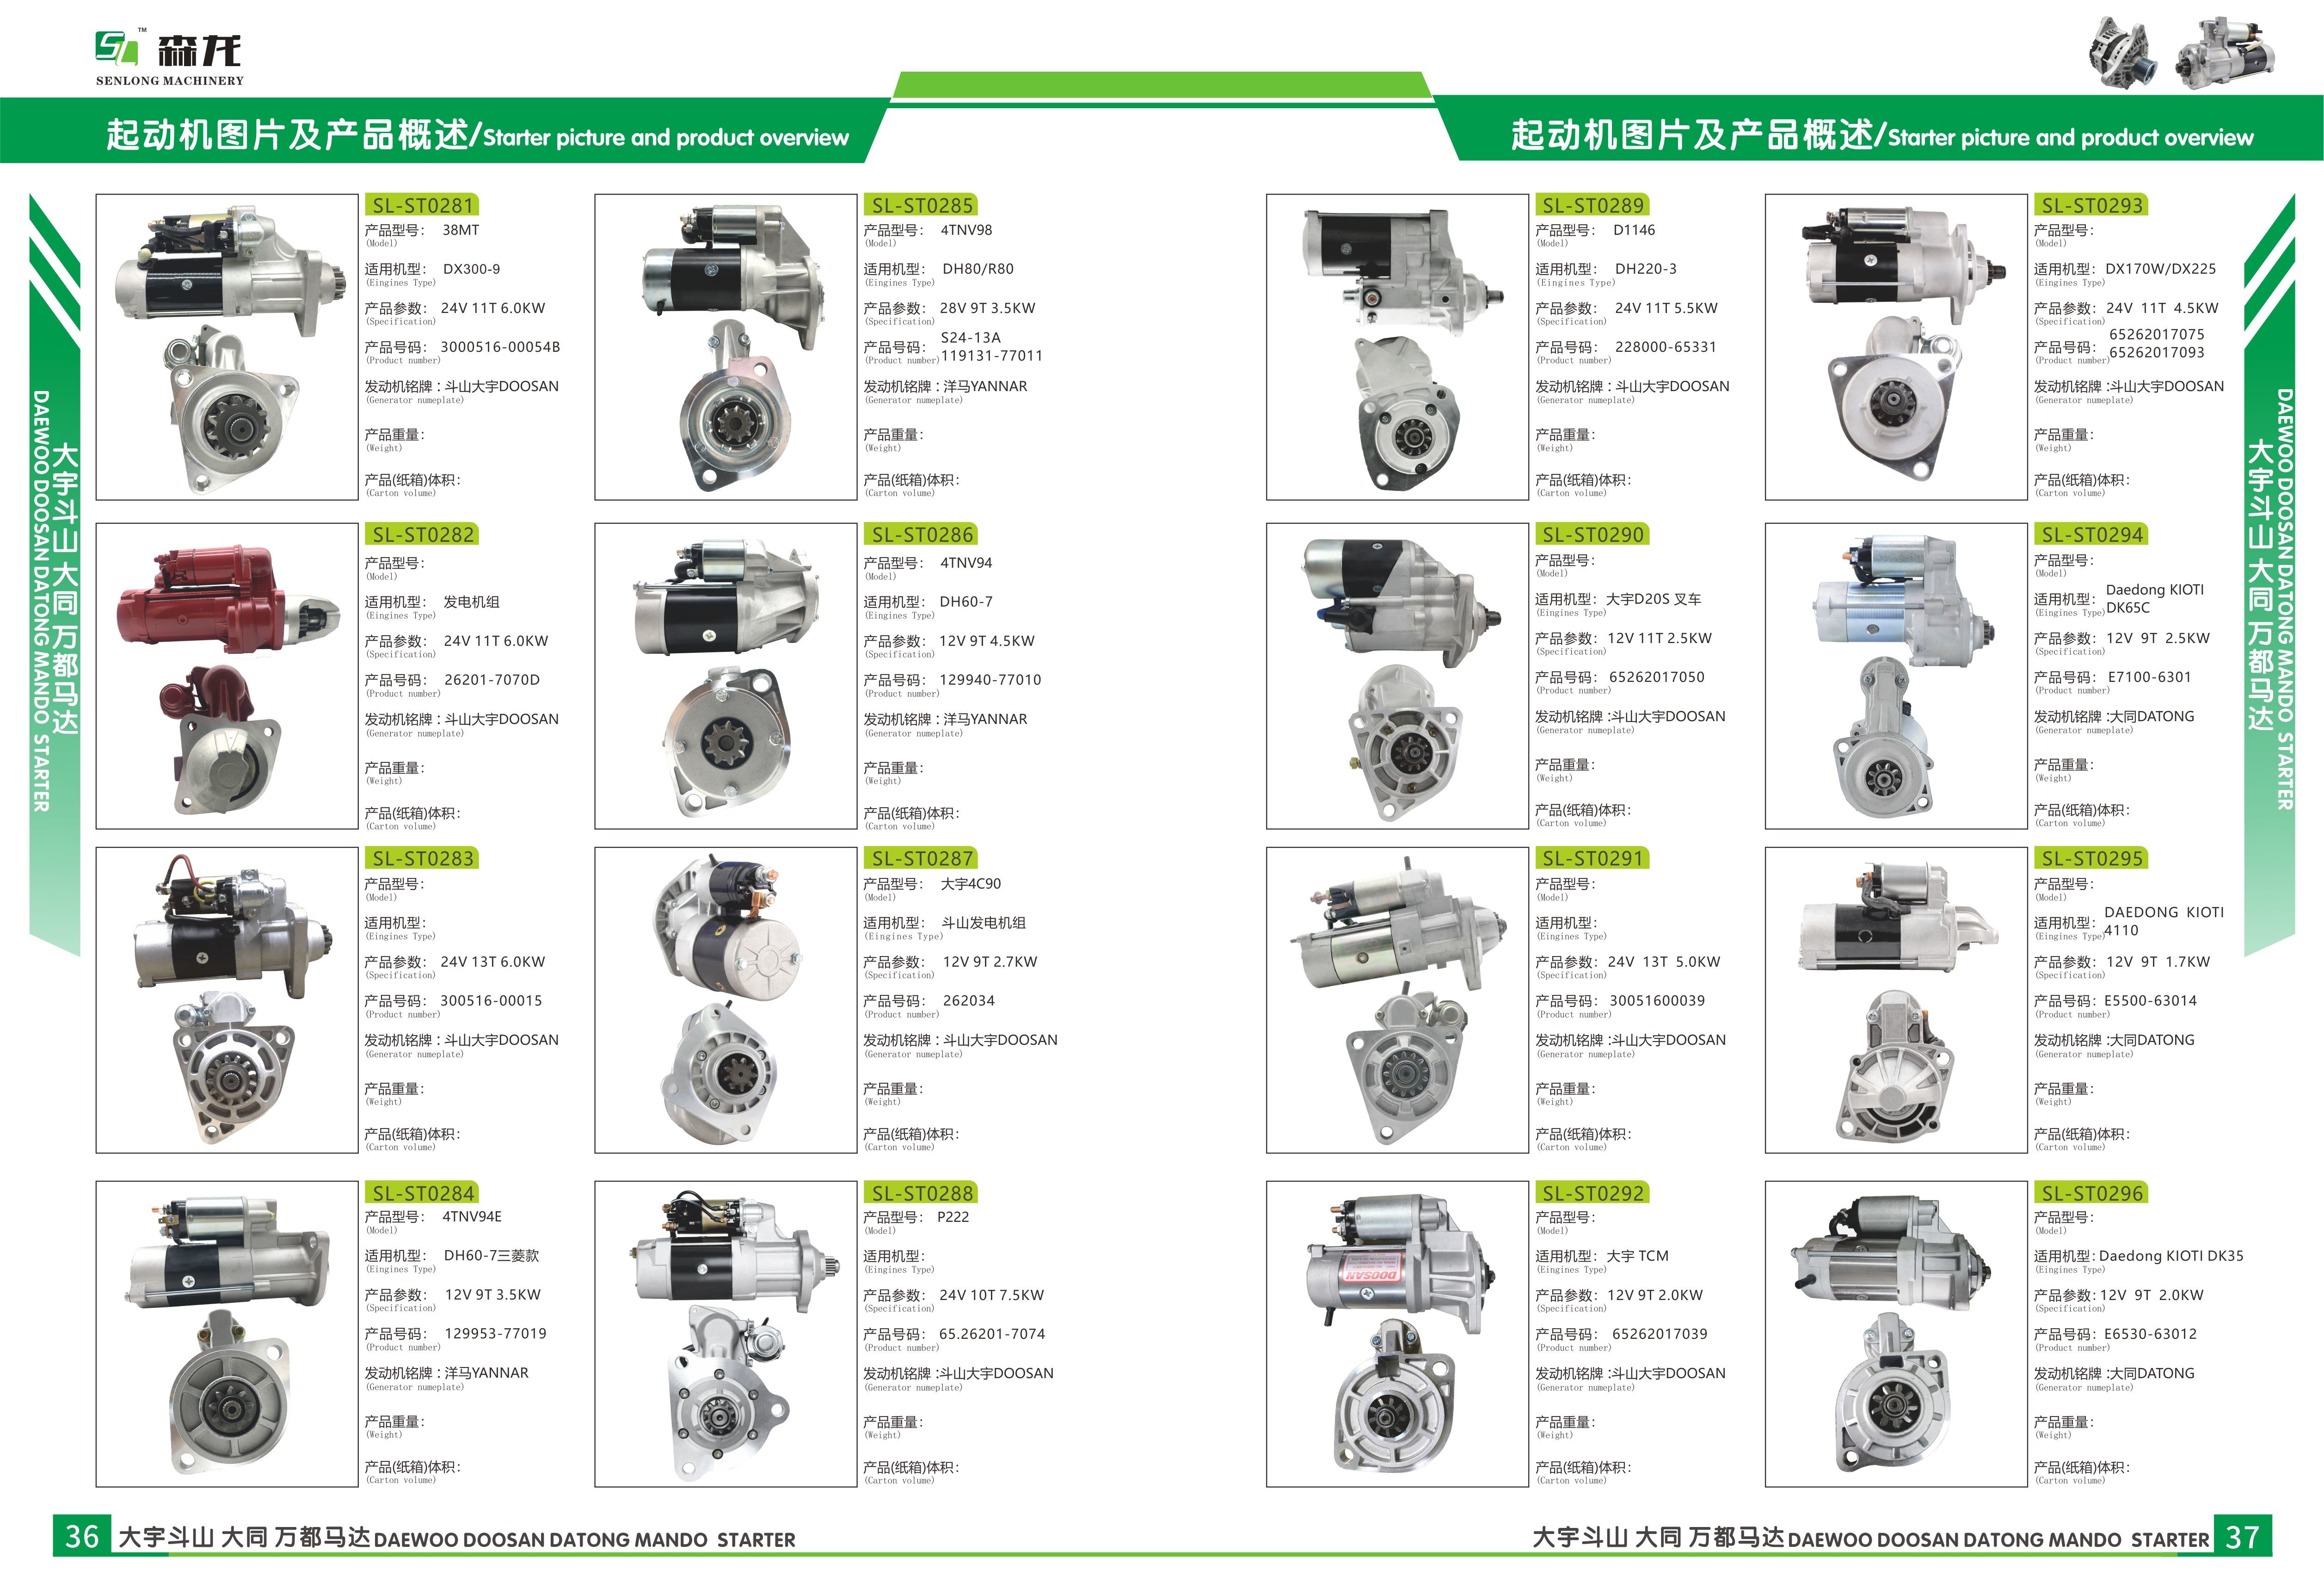 3.5KW Starter motor Mitsubishi S4S 32A6600200, 32A6600201, 32A6600700, 32A6601200, M2T66271, M2TS5071